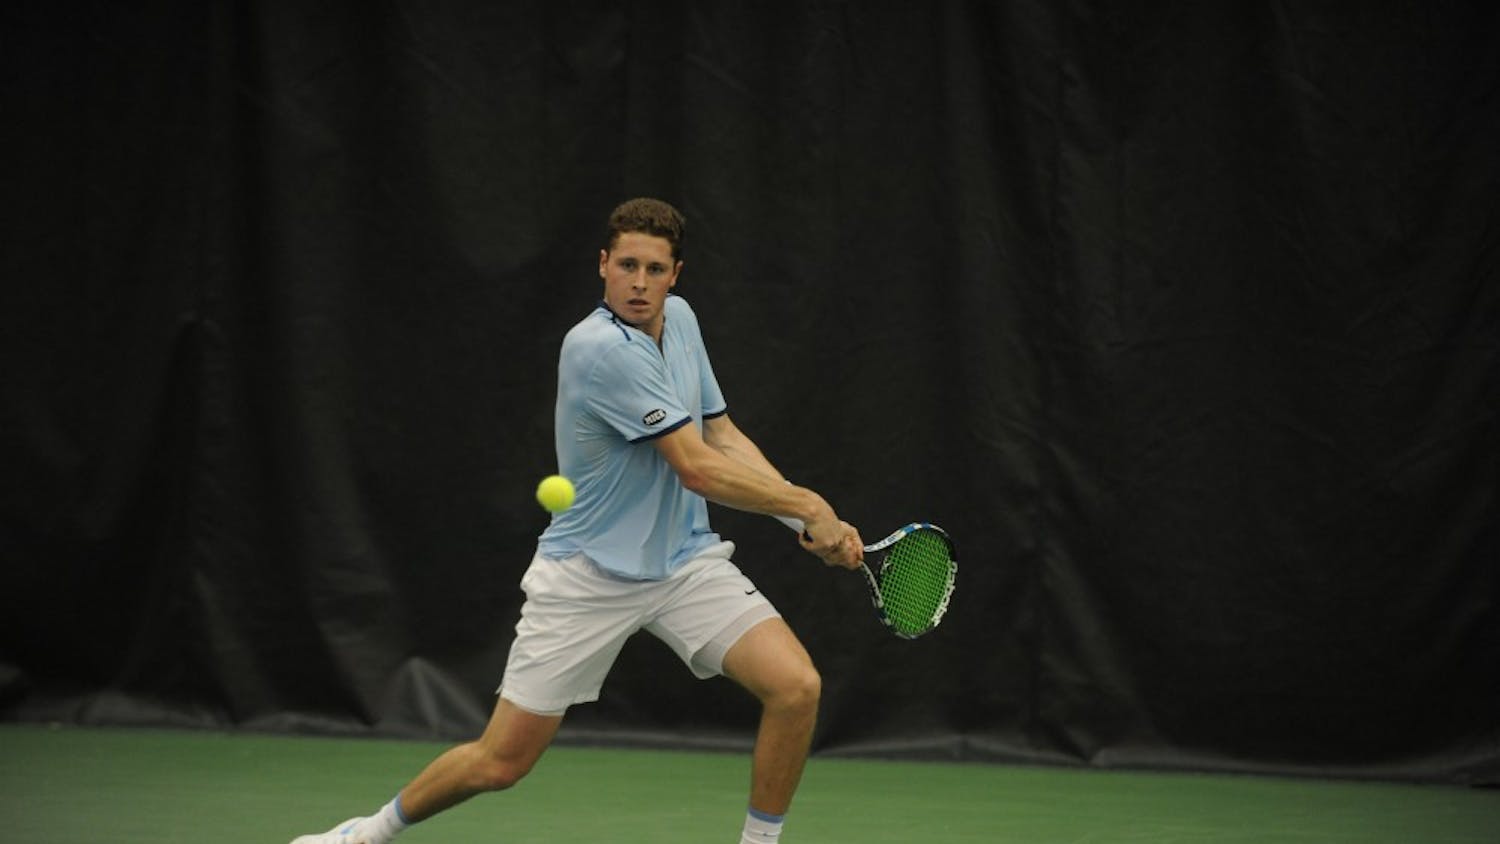 Blaine Boyden tennis